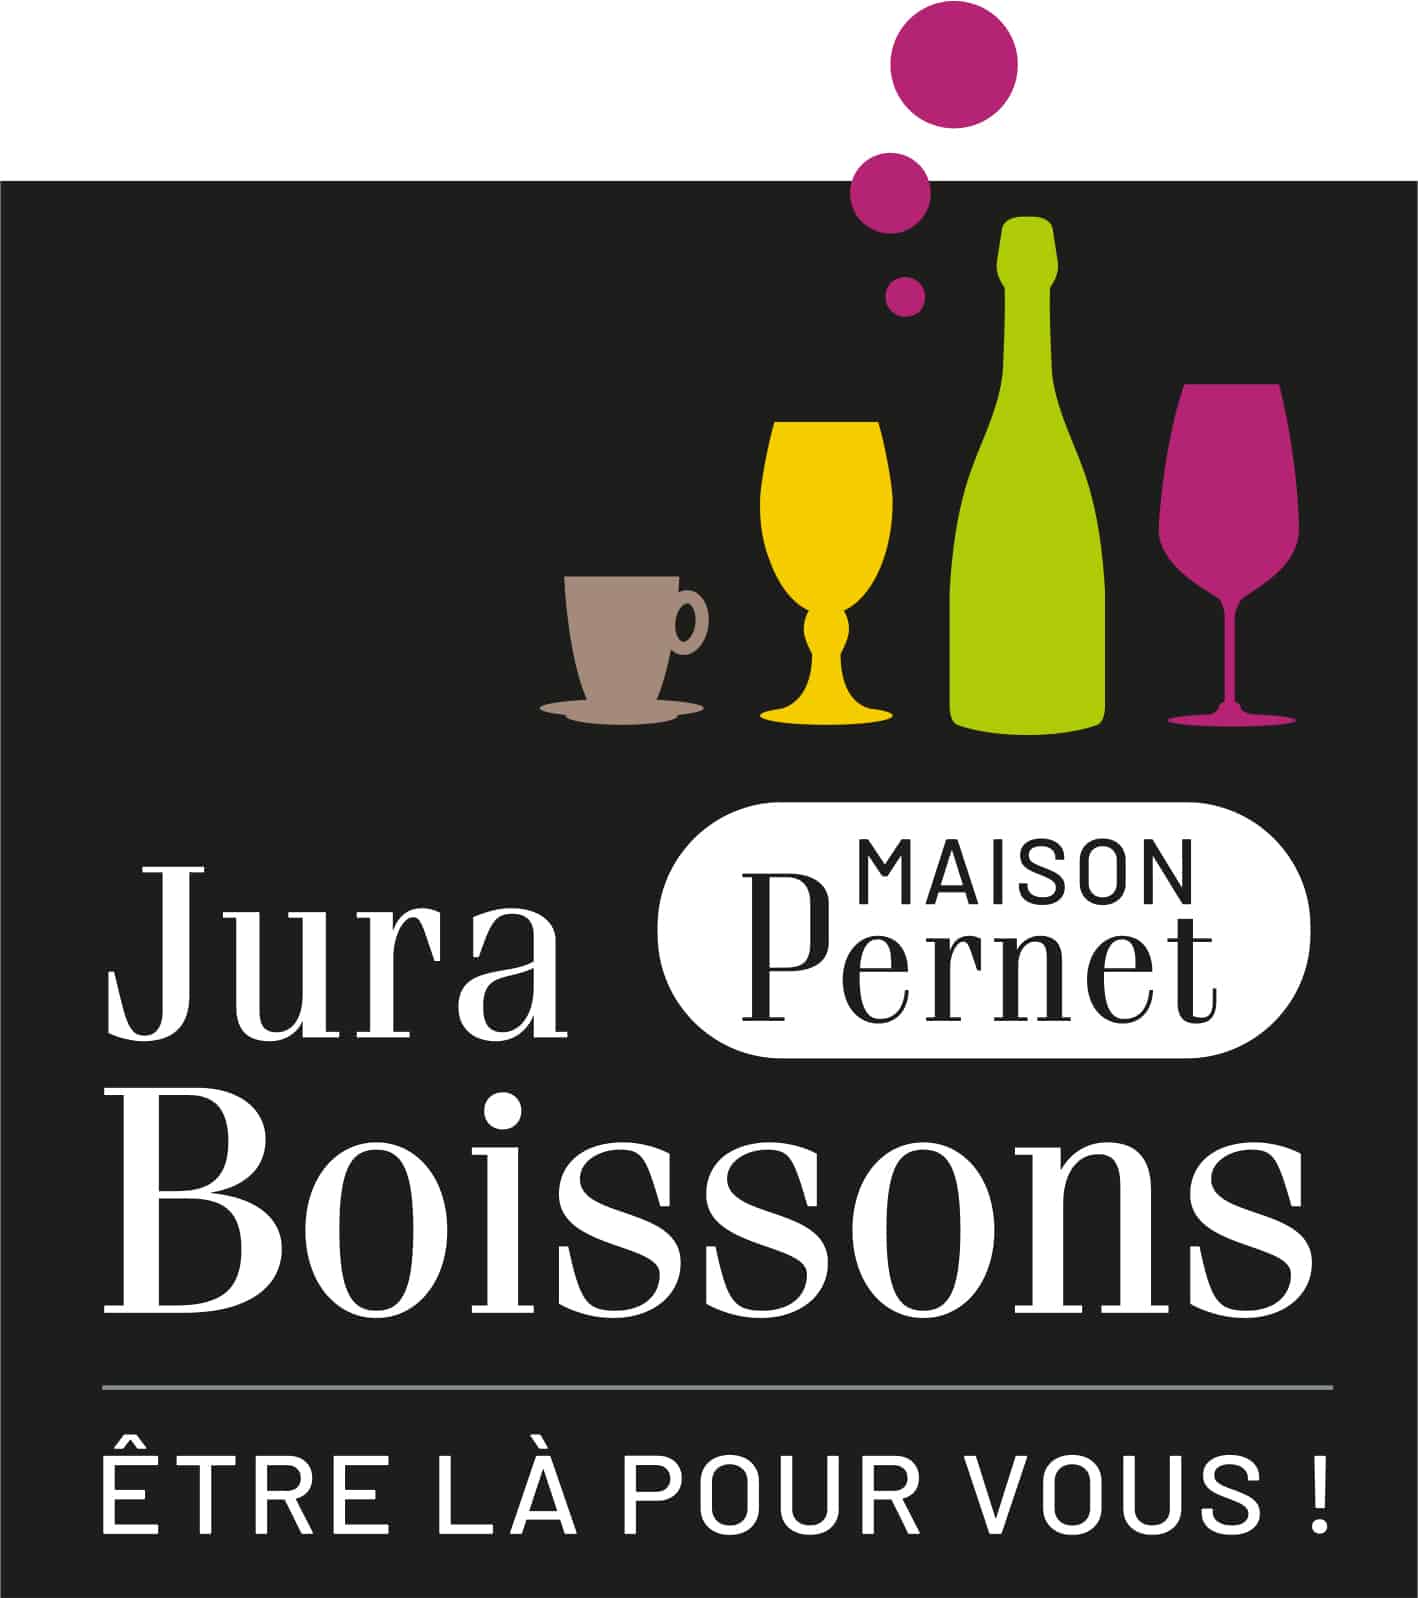 MAISON-PERNET-Logo-JuraBoissons-2021